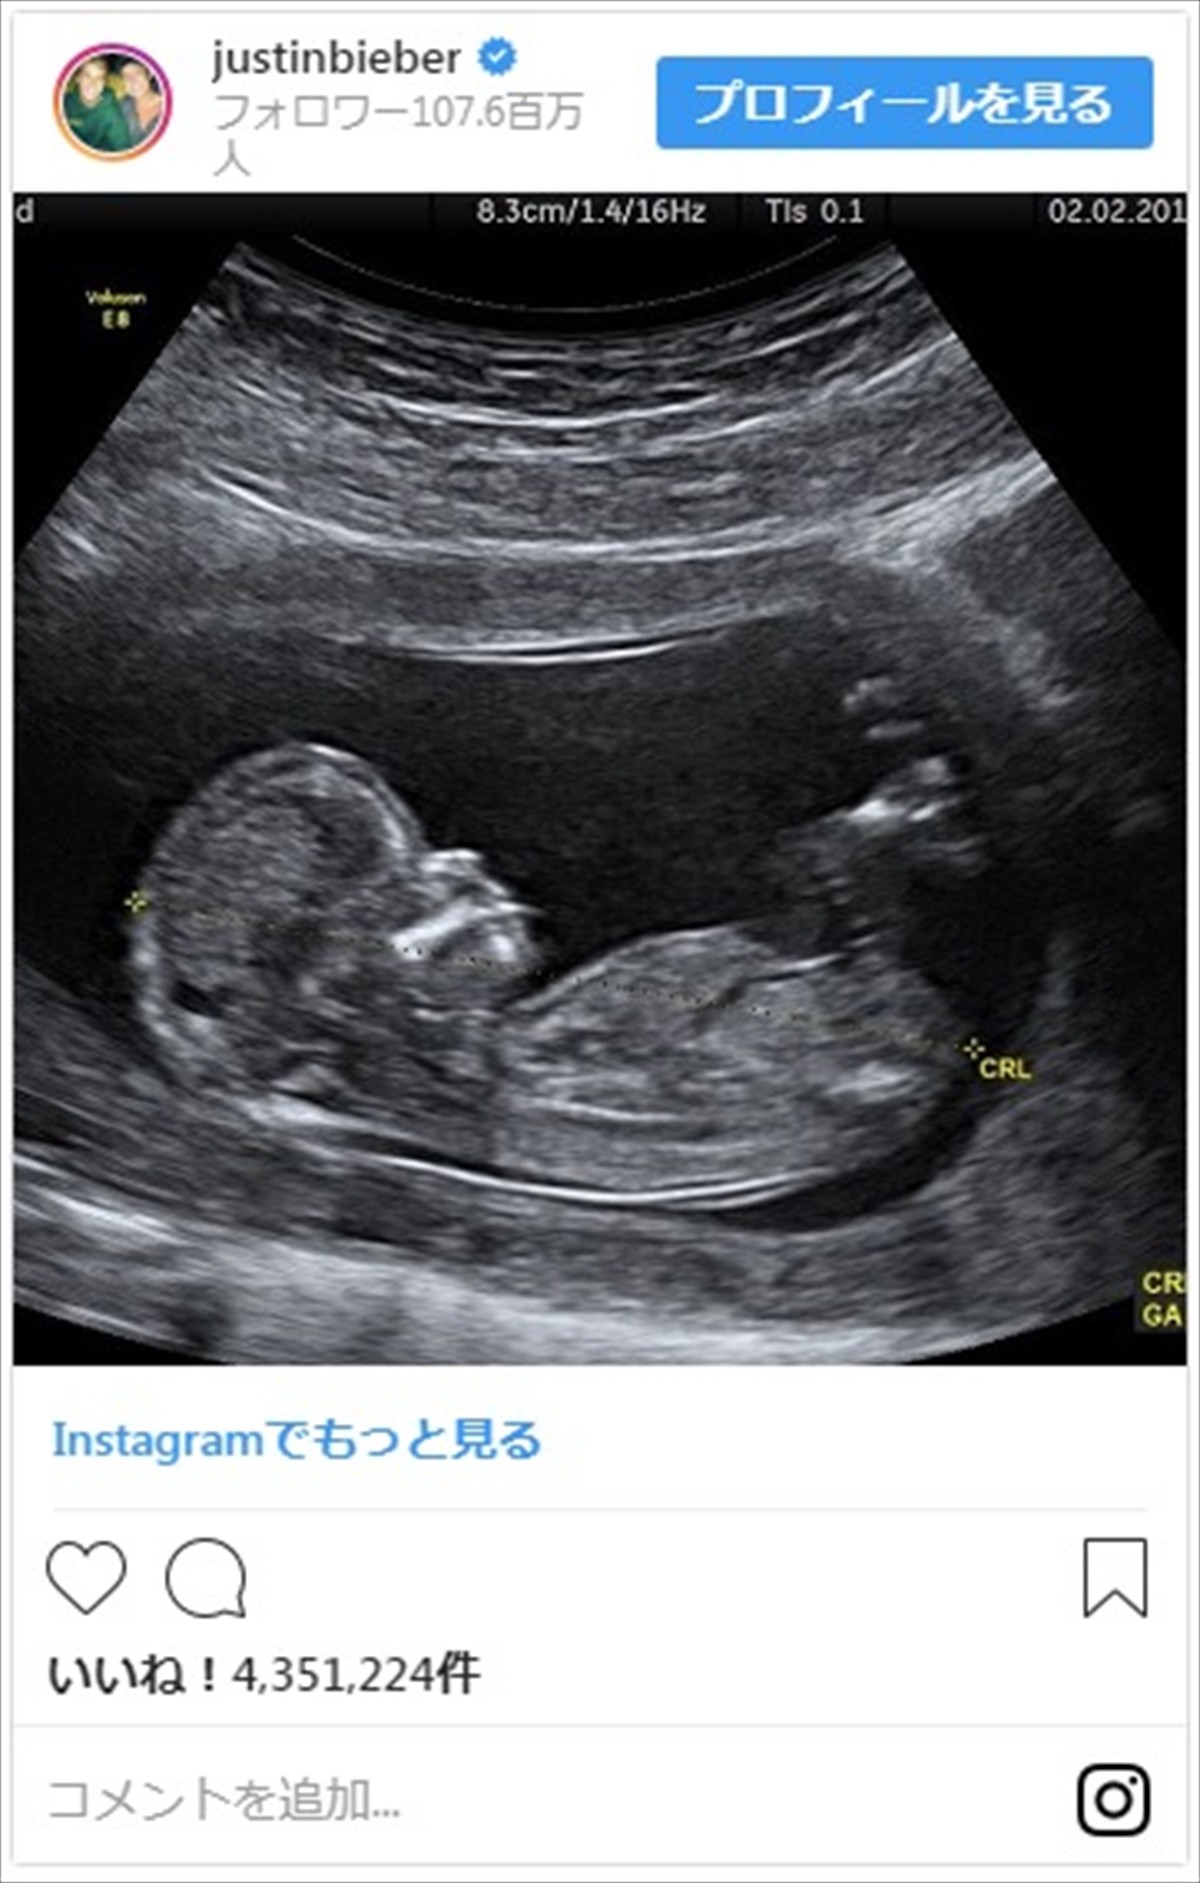 ジャスティン・ビーバー、エイプリルフールに胎児のエコー写真でファン混乱